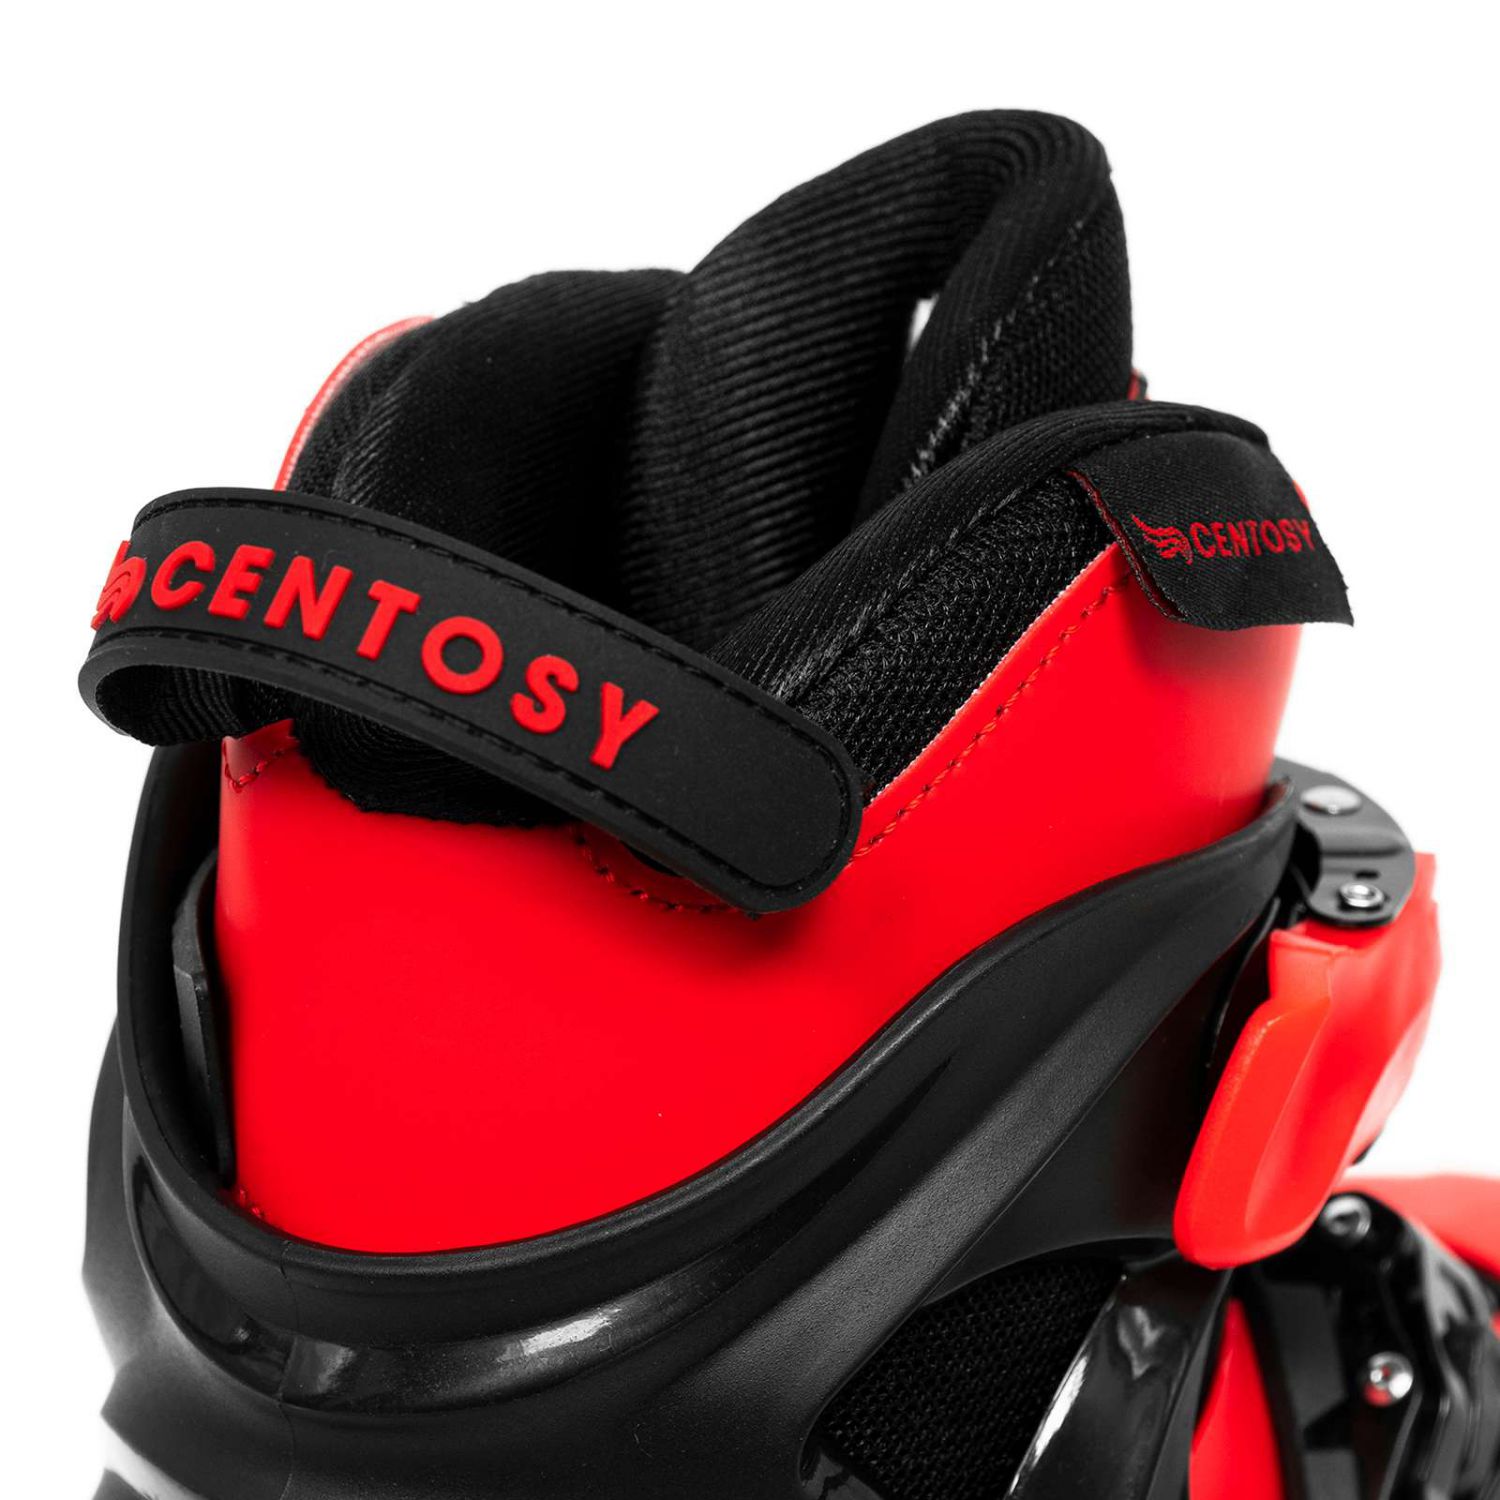 Giày patin centosy Kid Pro 2 phiên bản đỏ đen chính hãng